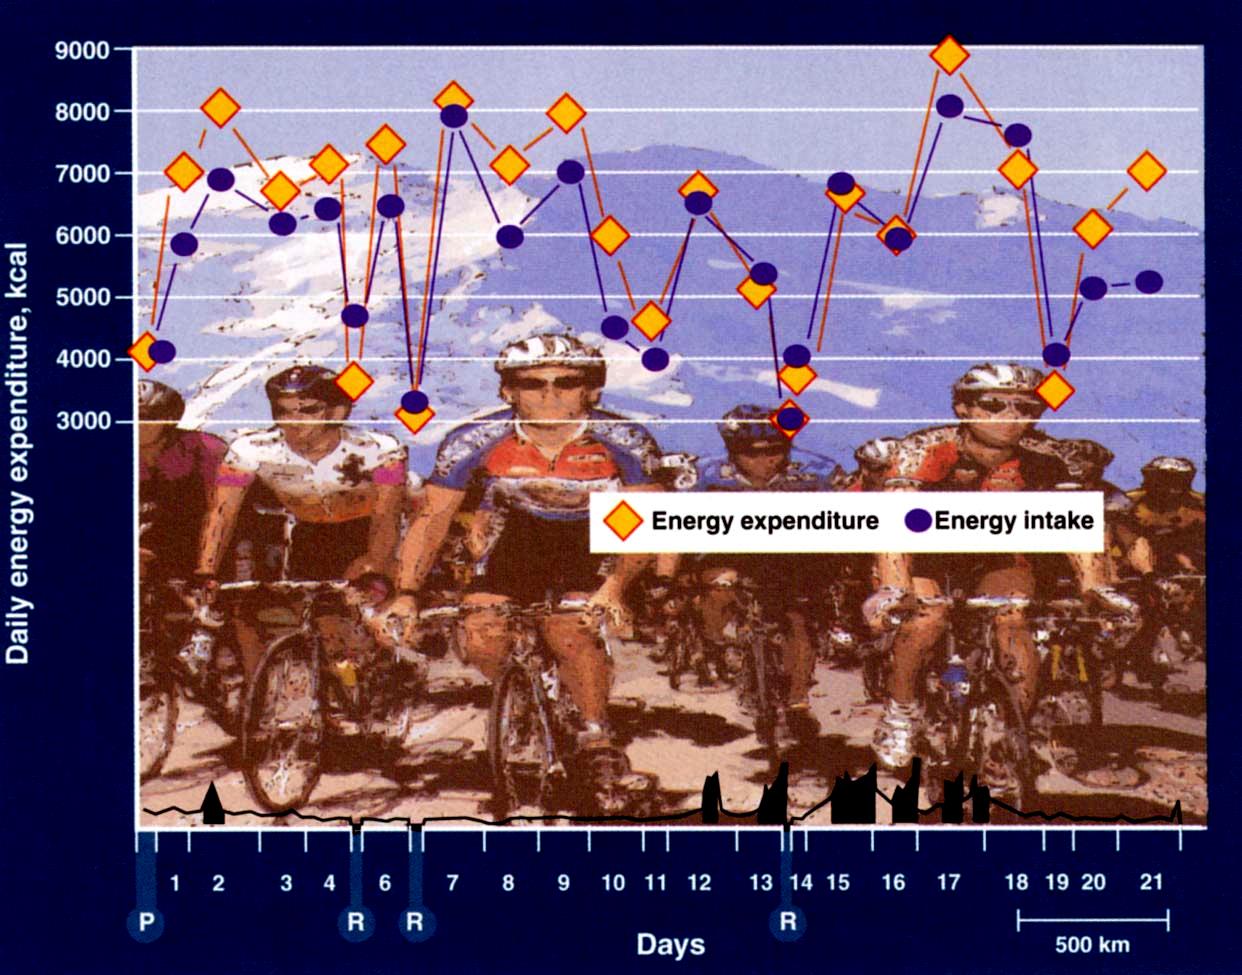 Tour de France egyedi eset a hosszantartó állóképességi teljesítmény és az extrém energia leadás/felvétel kapcsolatához Extrém energia leadás Napi átlagos kalória leadás: 6500kcal Hegyi szakaszon